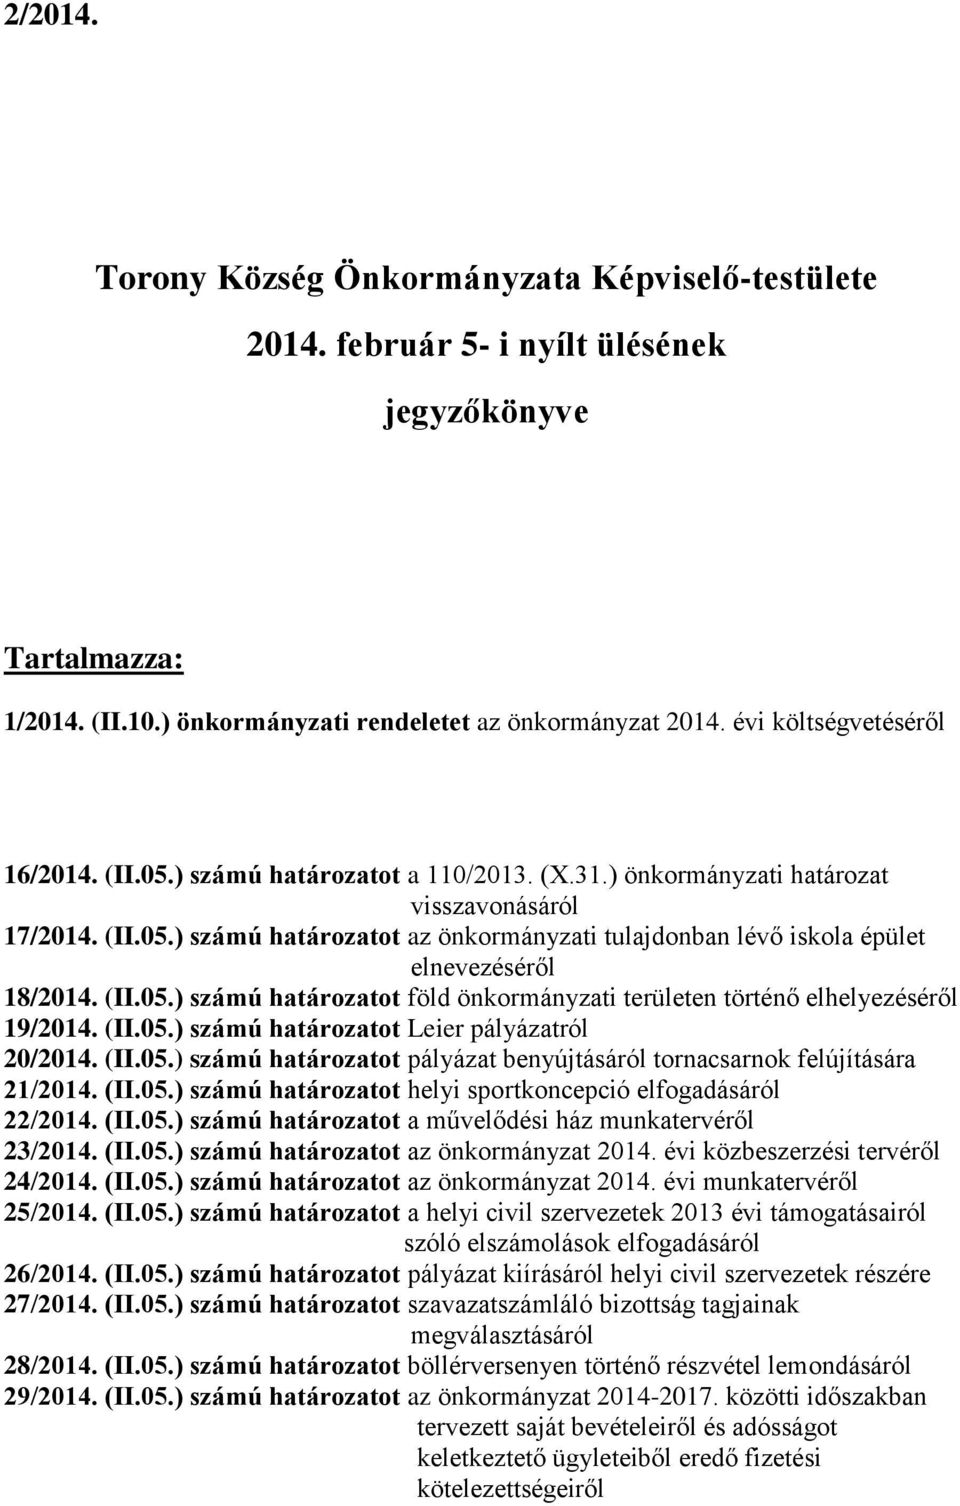 (II.05.) számú határozatot föld önkormányzati területen történő elhelyezéséről 19/2014. (II.05.) számú határozatot Leier pályázatról 20/2014. (II.05.) számú határozatot pályázat benyújtásáról tornacsarnok felújítására 21/2014.